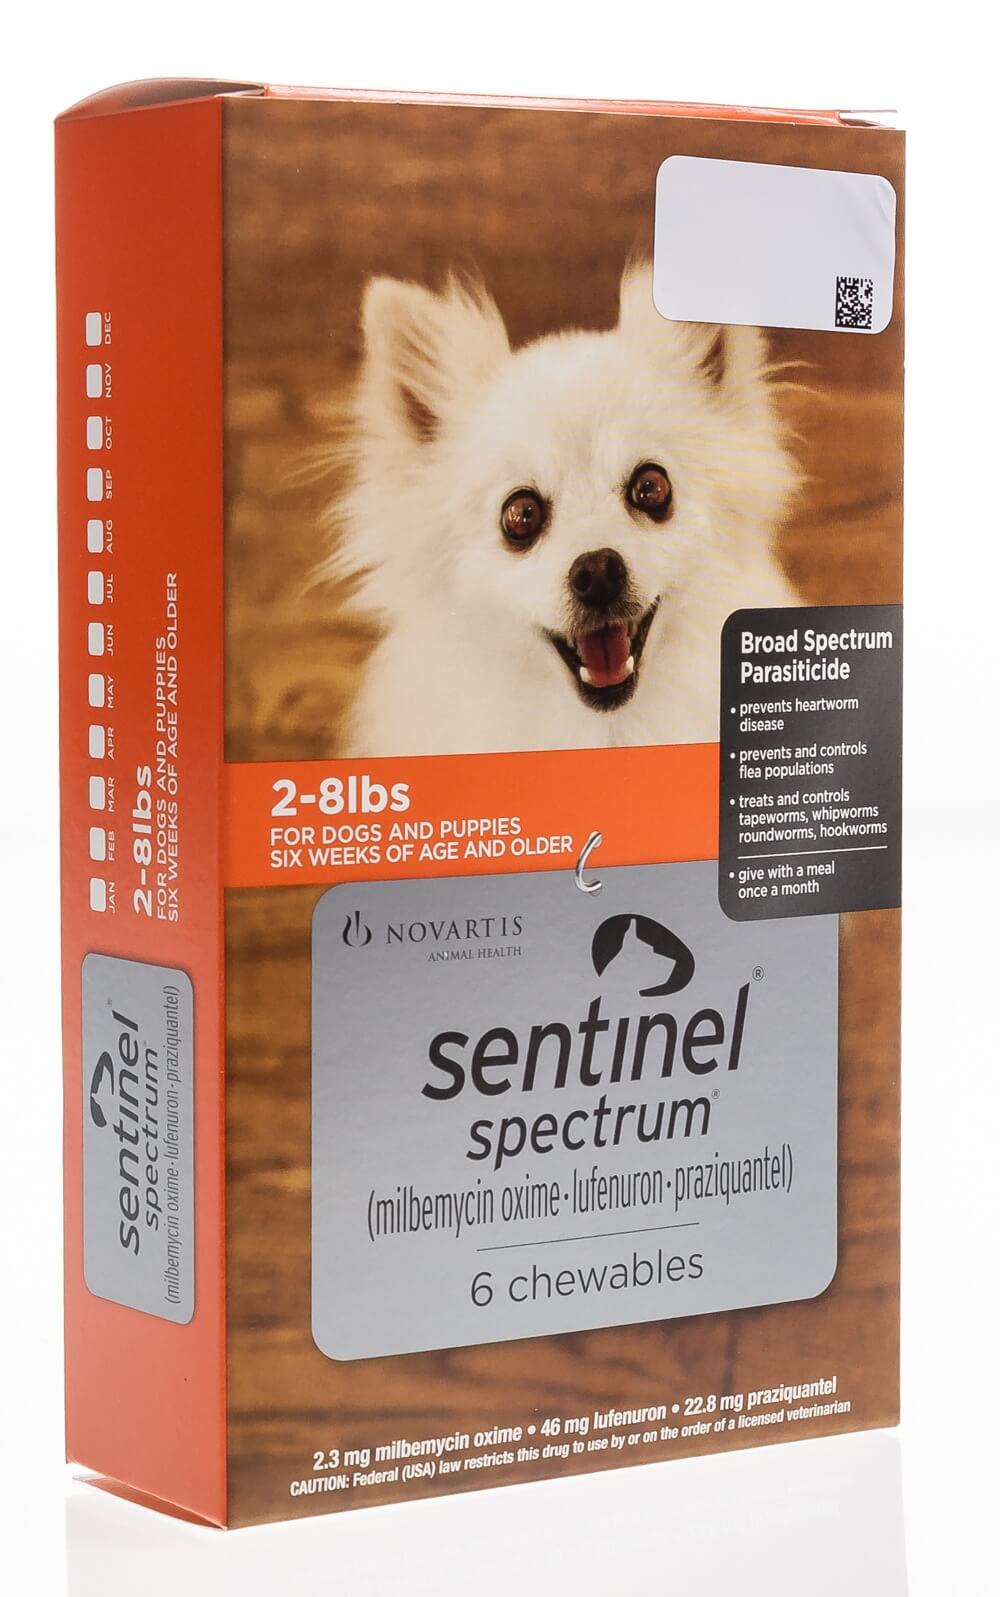 sentinel-spectrum-heartworm-chews-vetrxdirect-pharmacy